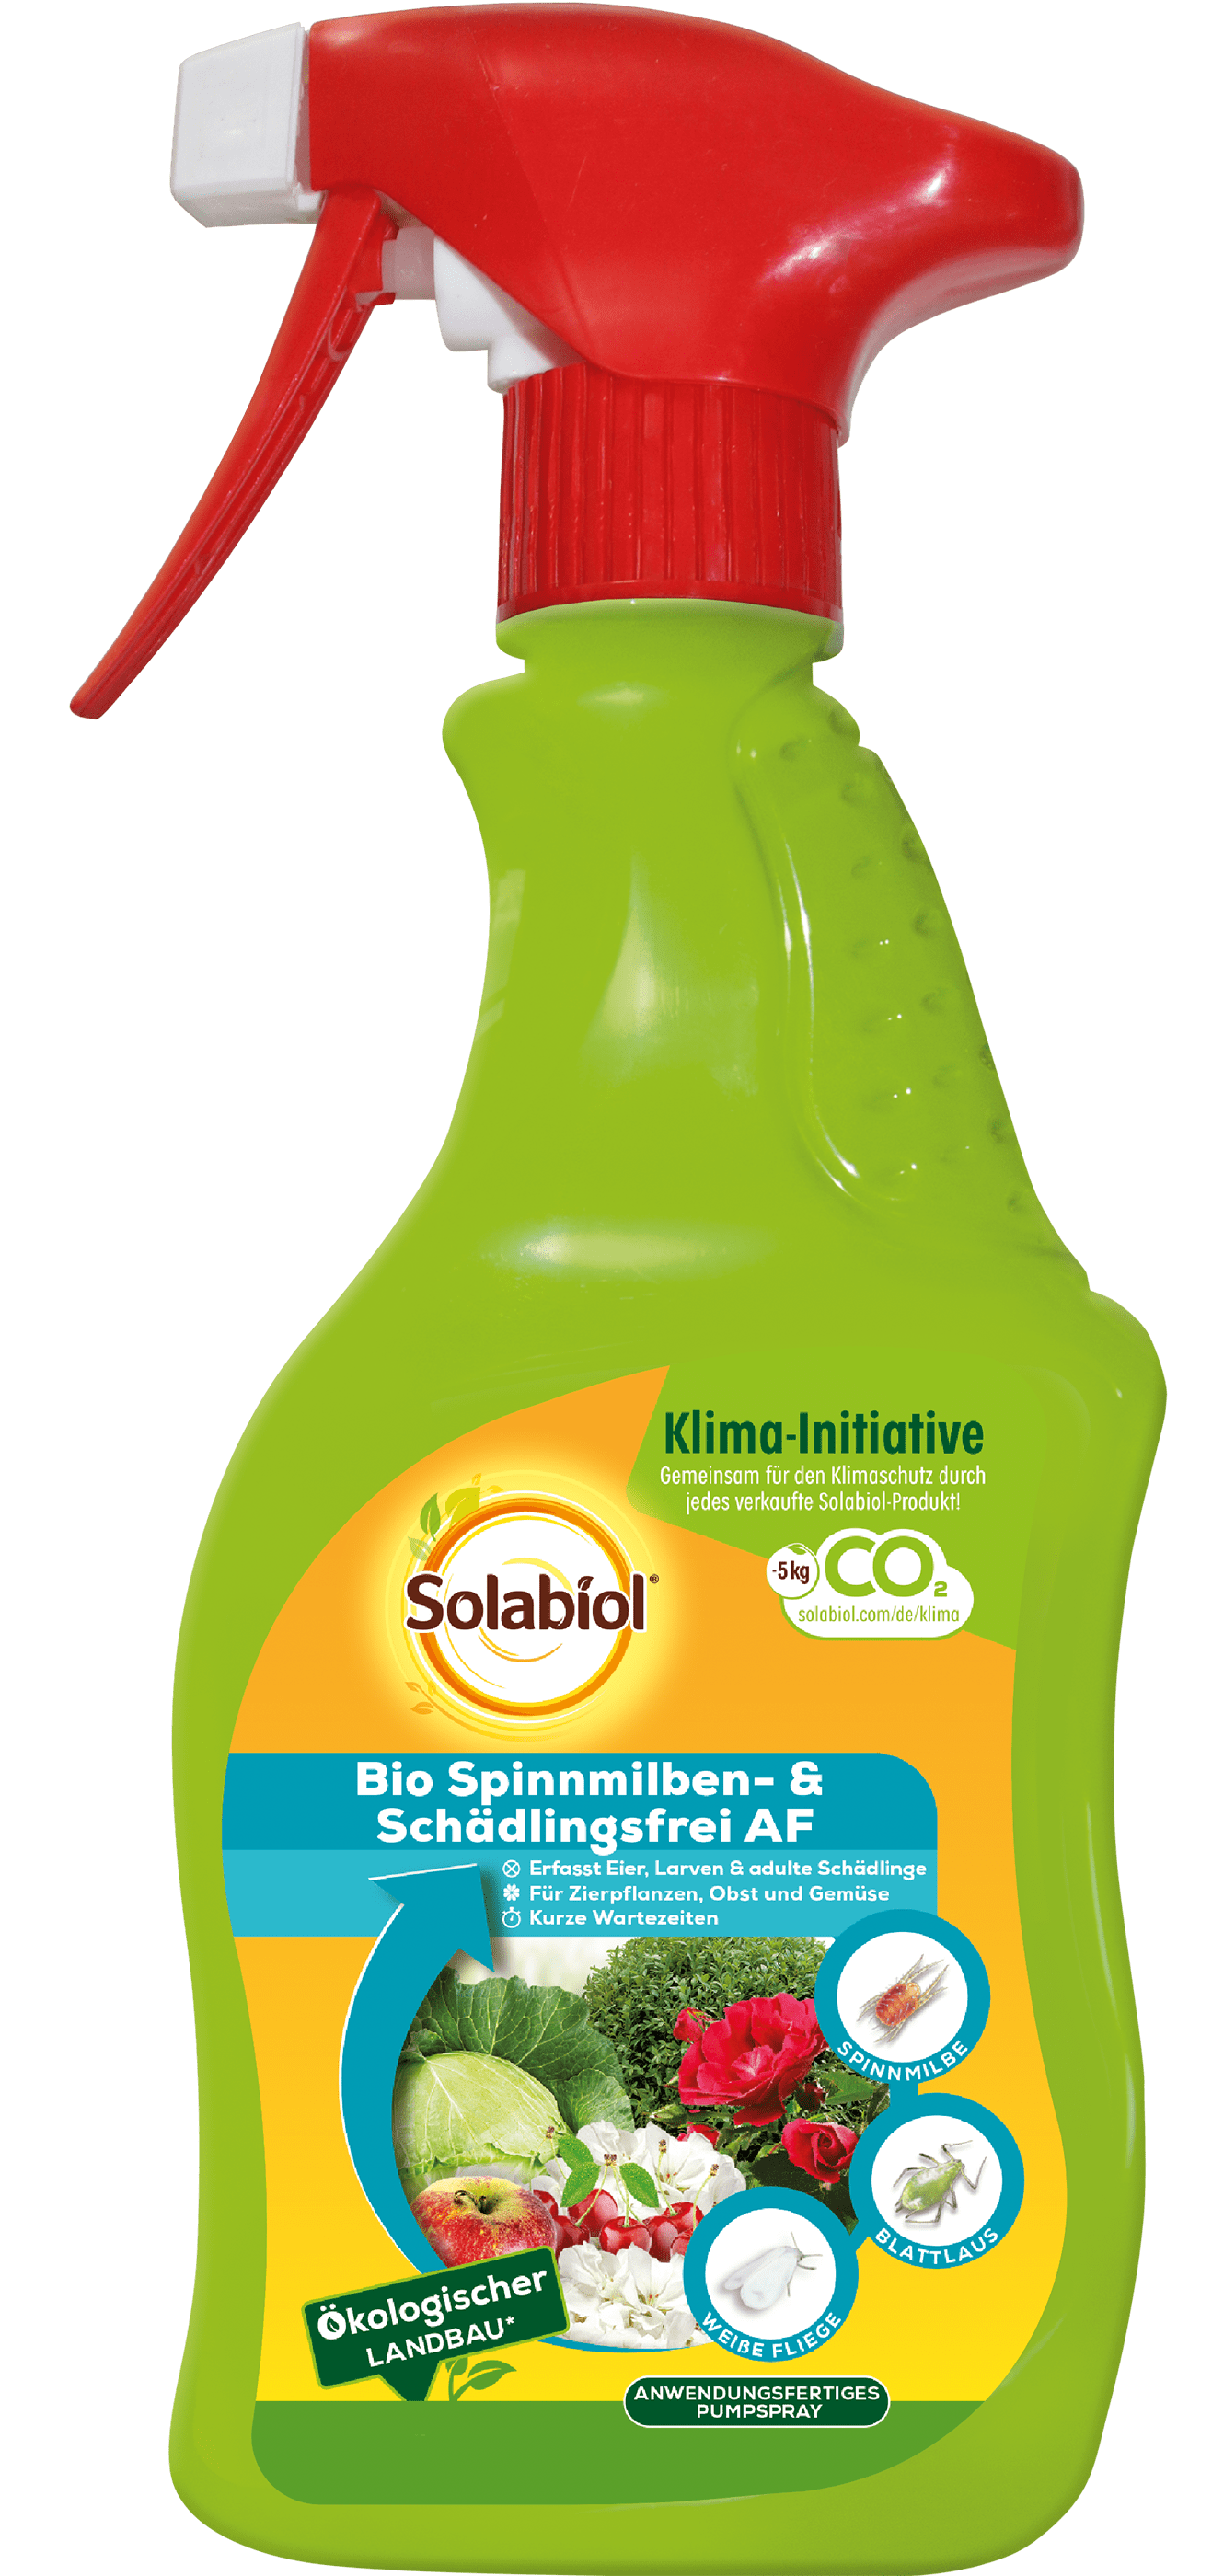 Solabiol Bio Spinnmilben- & Schädlingsfrei AF Sofortwirkung 500 ml 